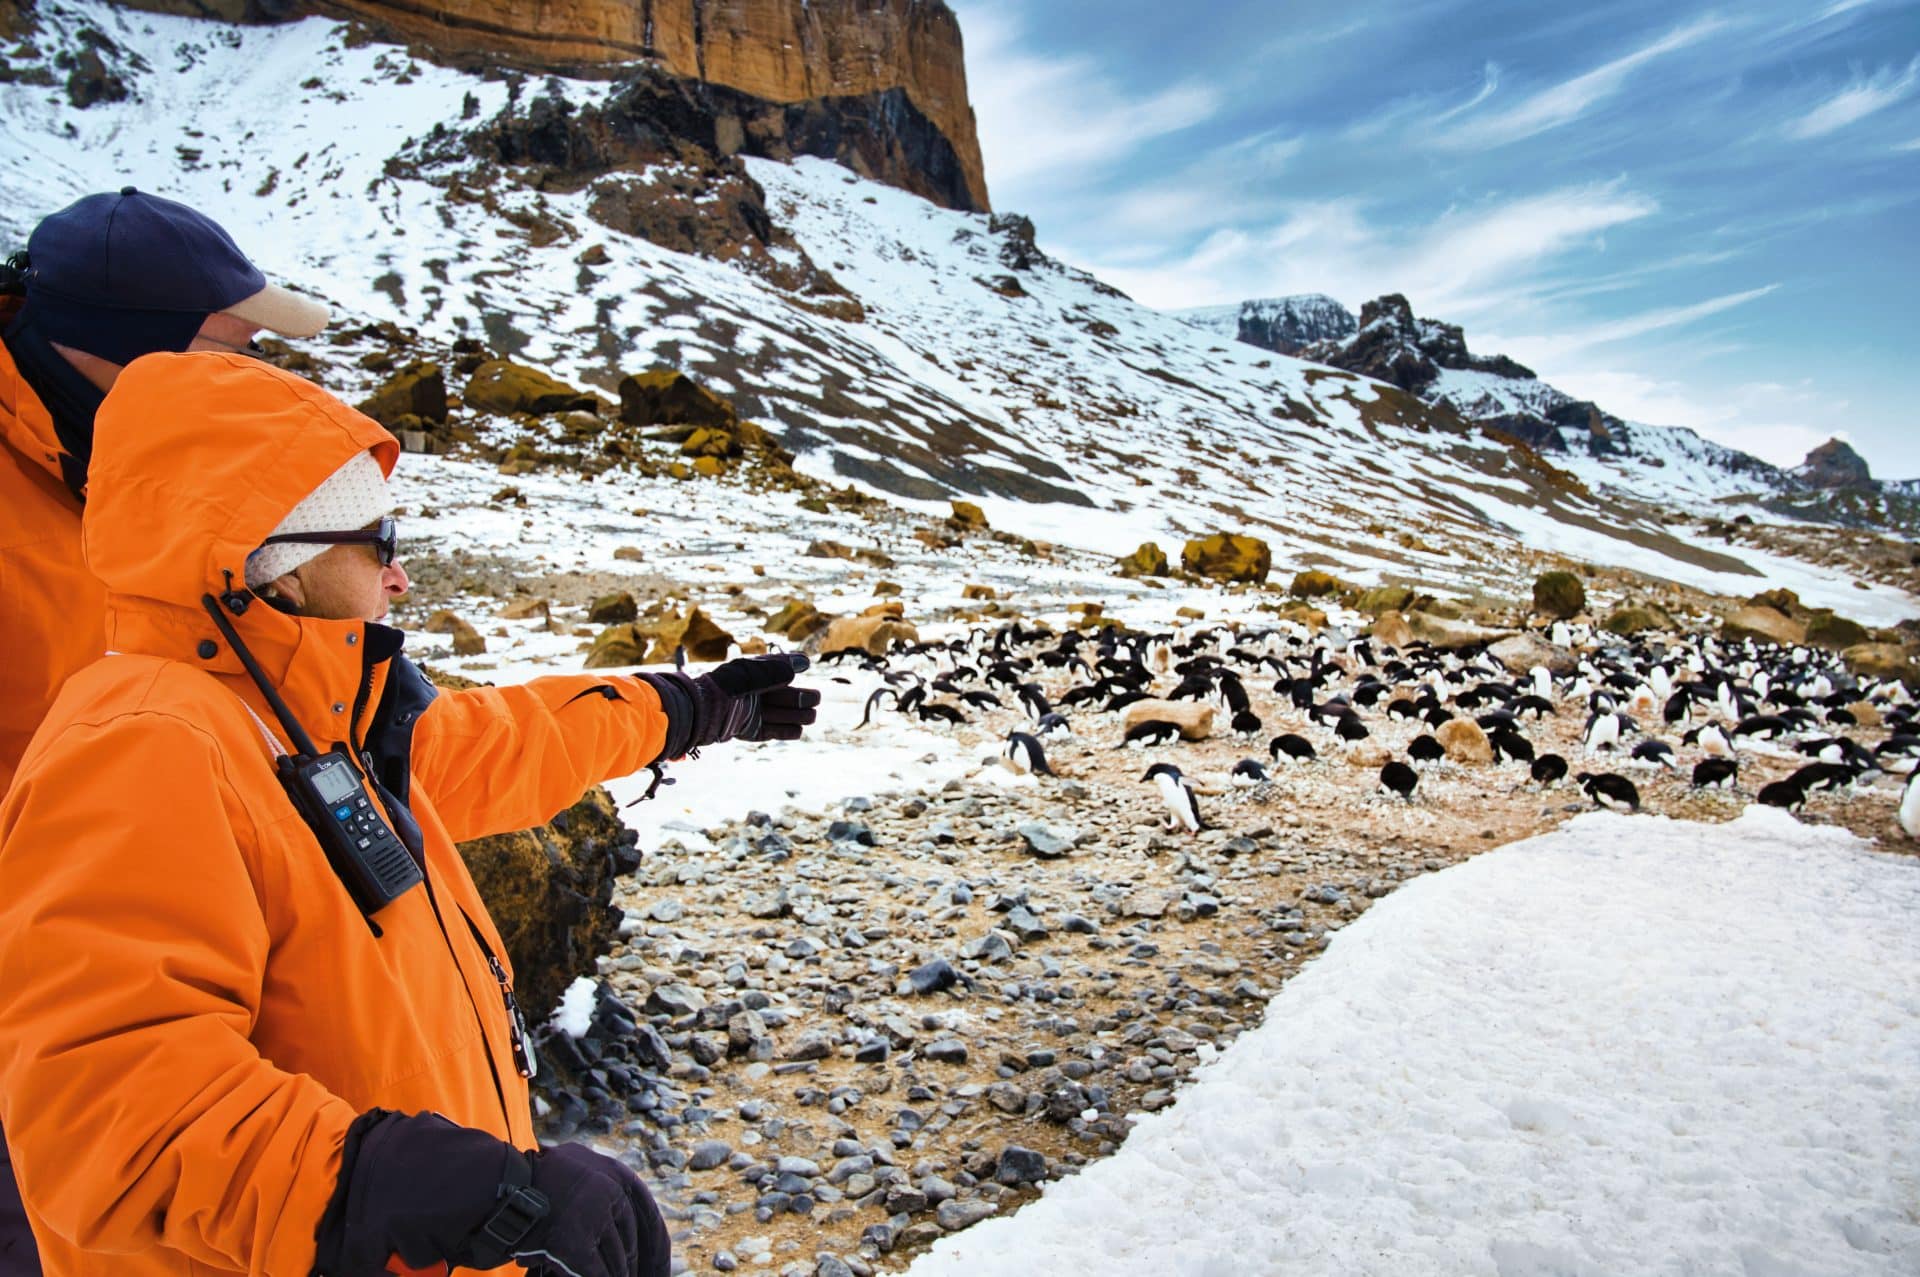 Hapag-Lloyd Cruises Gäste beobachten Pinguine, Robben, See-Elefanten und Wale – selbstverständlich immer mit Respekt vor der sensiblen Natur. Foto: © Hapag-Lloyd Cruises